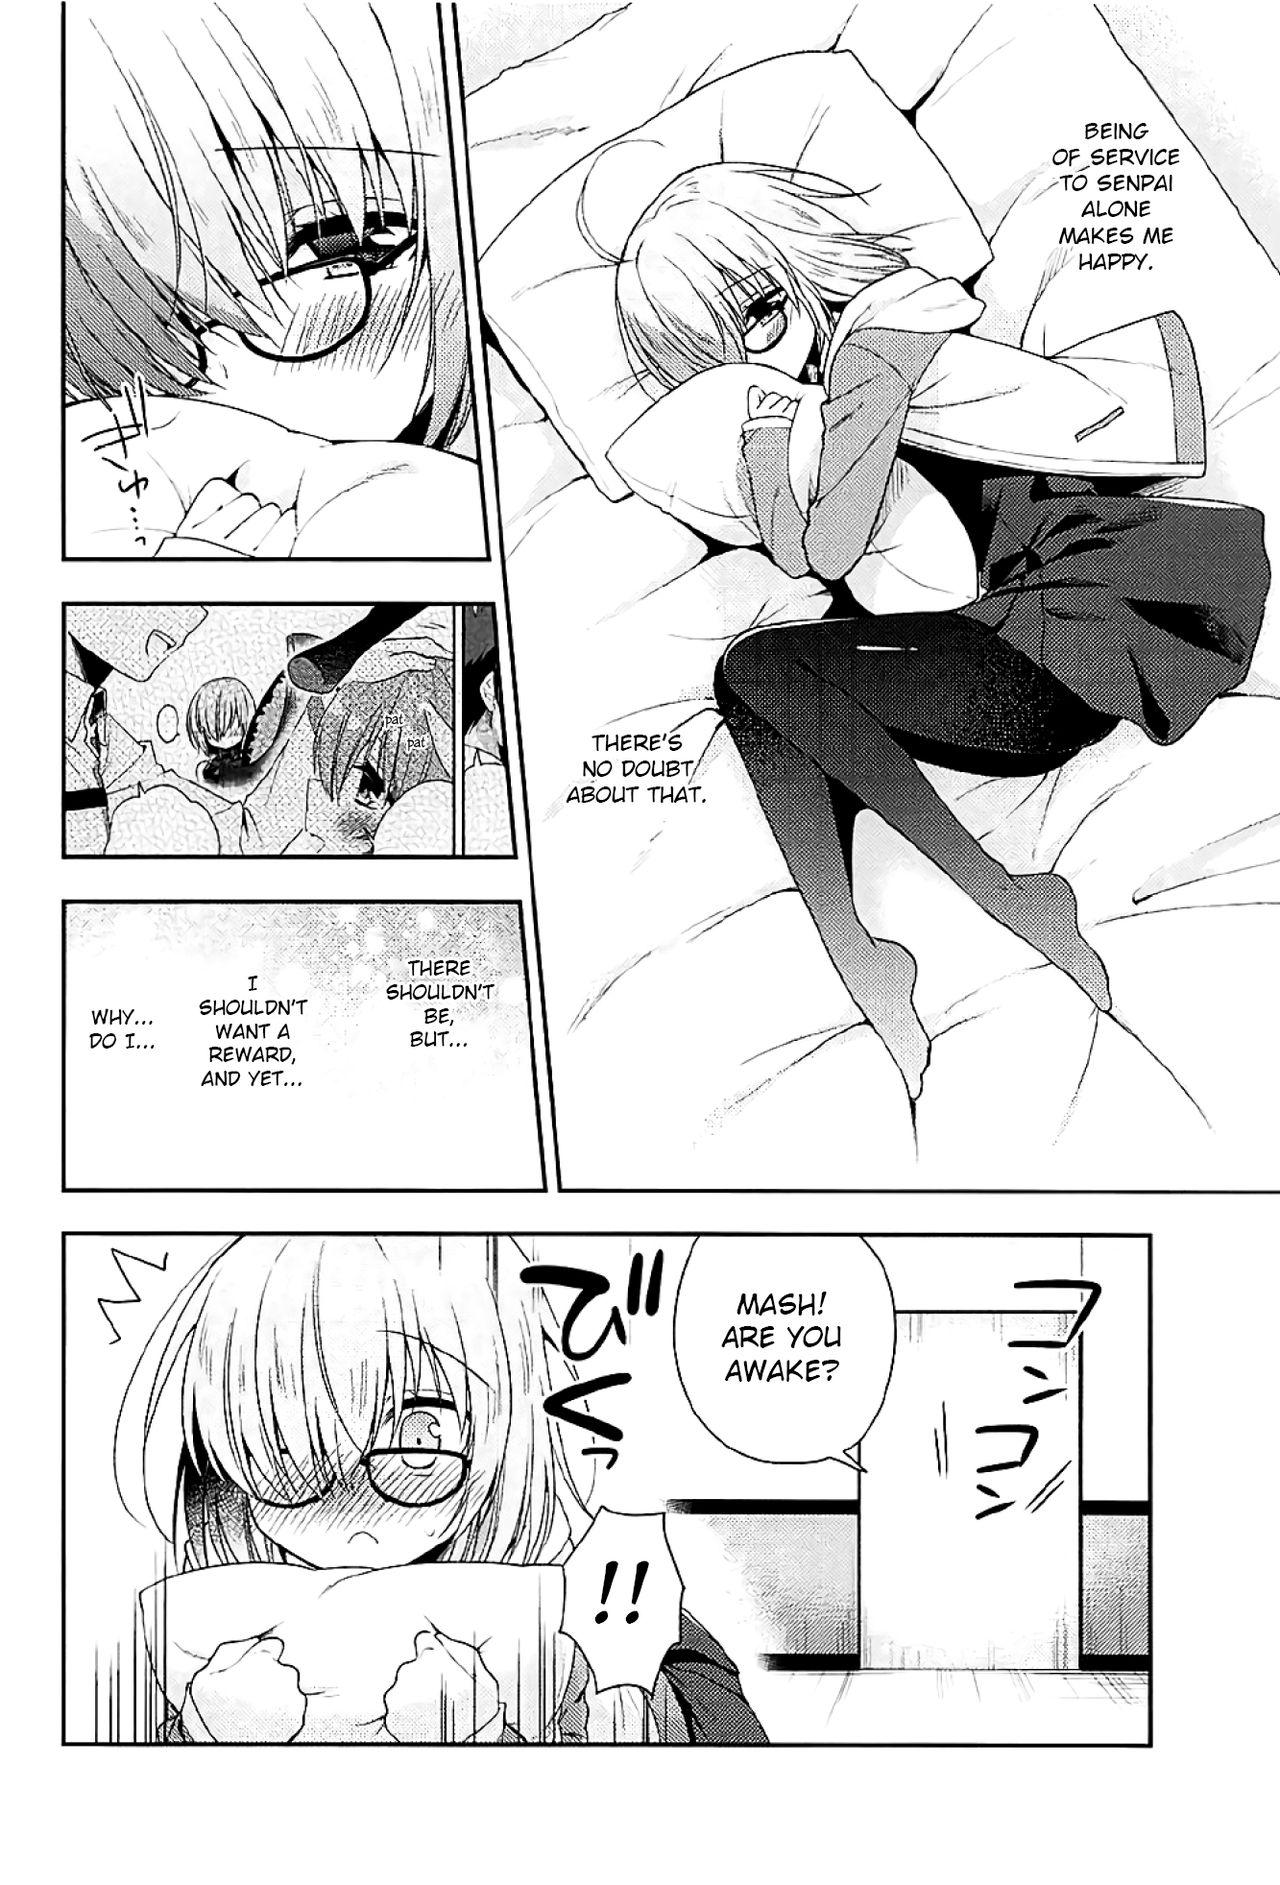 Balls Watashi, Senpai ni Koi Shichatta Mitai desu | I Seem to Have Fallen for Senpai - Fate grand order Hot Women Having Sex - Page 6